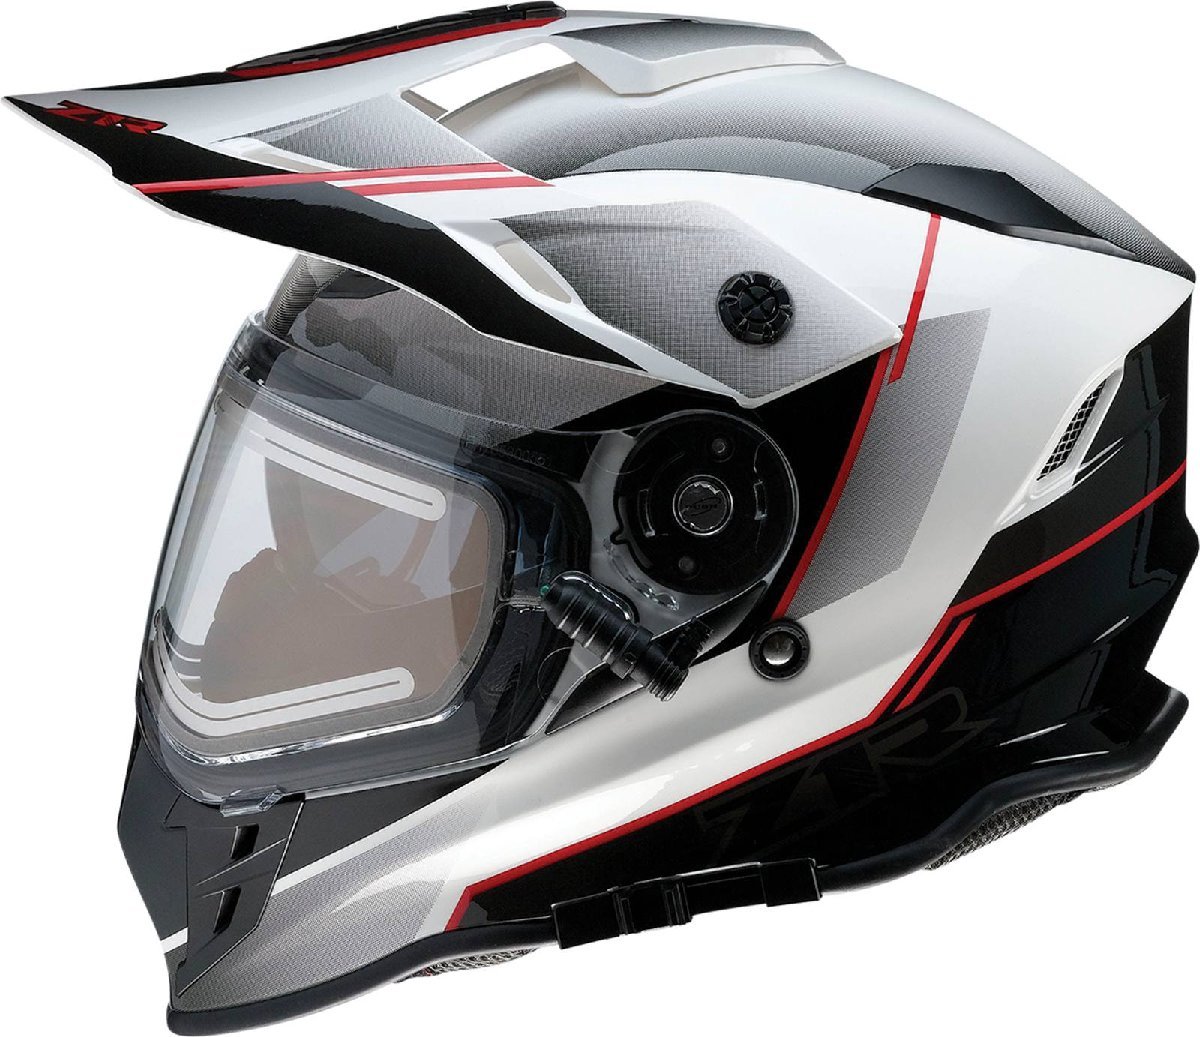 Mサイズ - ブラック/レッド/ホワイト - Z1R Range Bladestorm スノー エレクトリック/電熱シールド付き ヘルメット